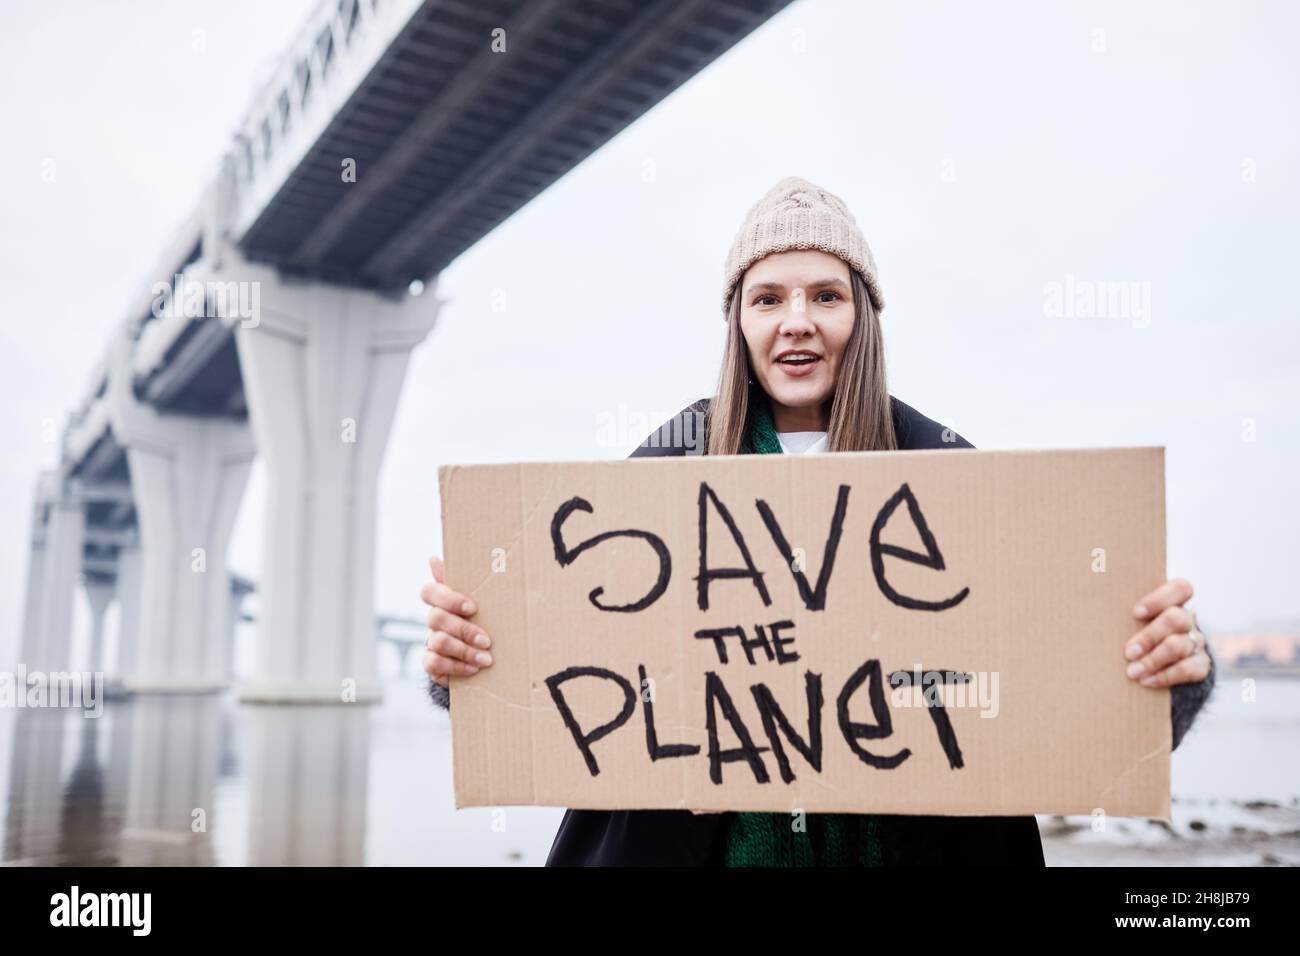 Porträt einer jungen Frau, die Schilder hält und schreit, während sie am Standort der Umweltkatastrophe protestiert Stockfoto